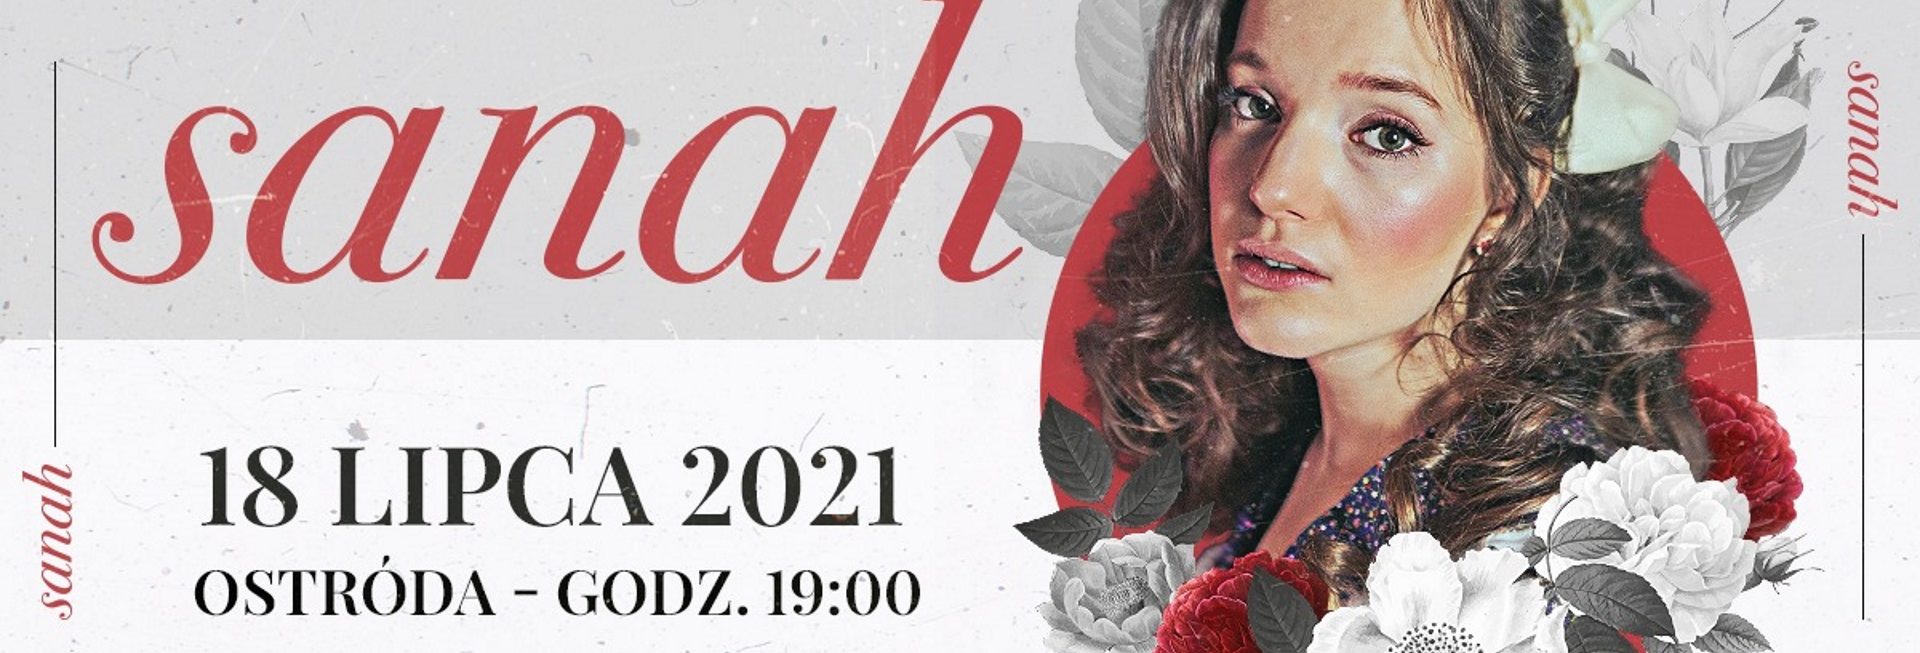 Plakat graficzny zapraszający do Ostródy na koncert SANAH – Ostróda 2021. Na plakacie zdjęcie artystki.